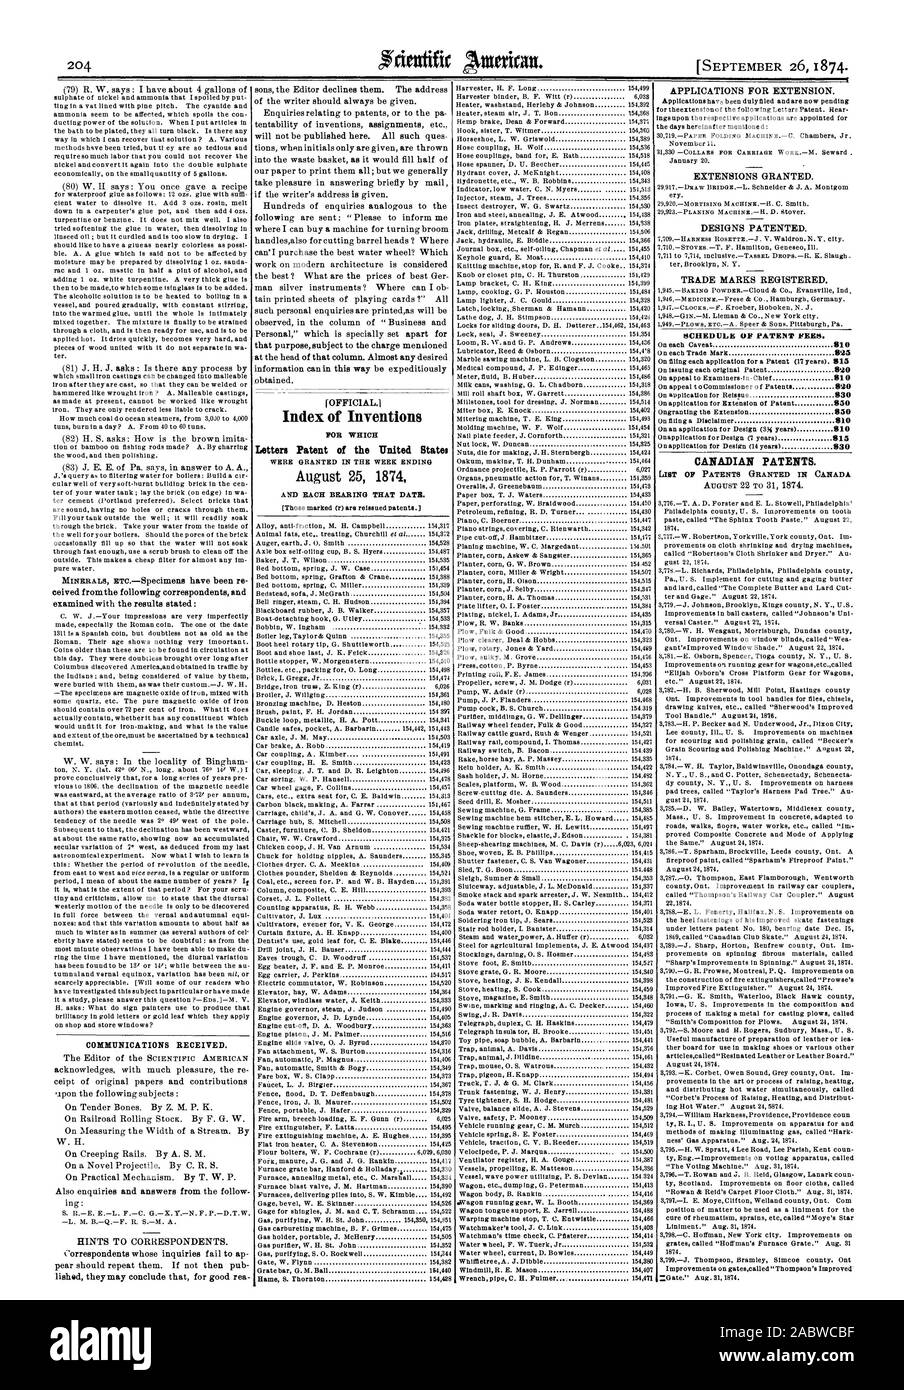 El 26 de septiembre de 1874. Las comunicaciones recibidas. Índice cartas patentes de invenciones de los Estados Unidos el 25 de agosto de 1874 el calendario de las tasas de patentes. Las patentes canadienses., Scientific American, 1874-09-26 Foto de stock